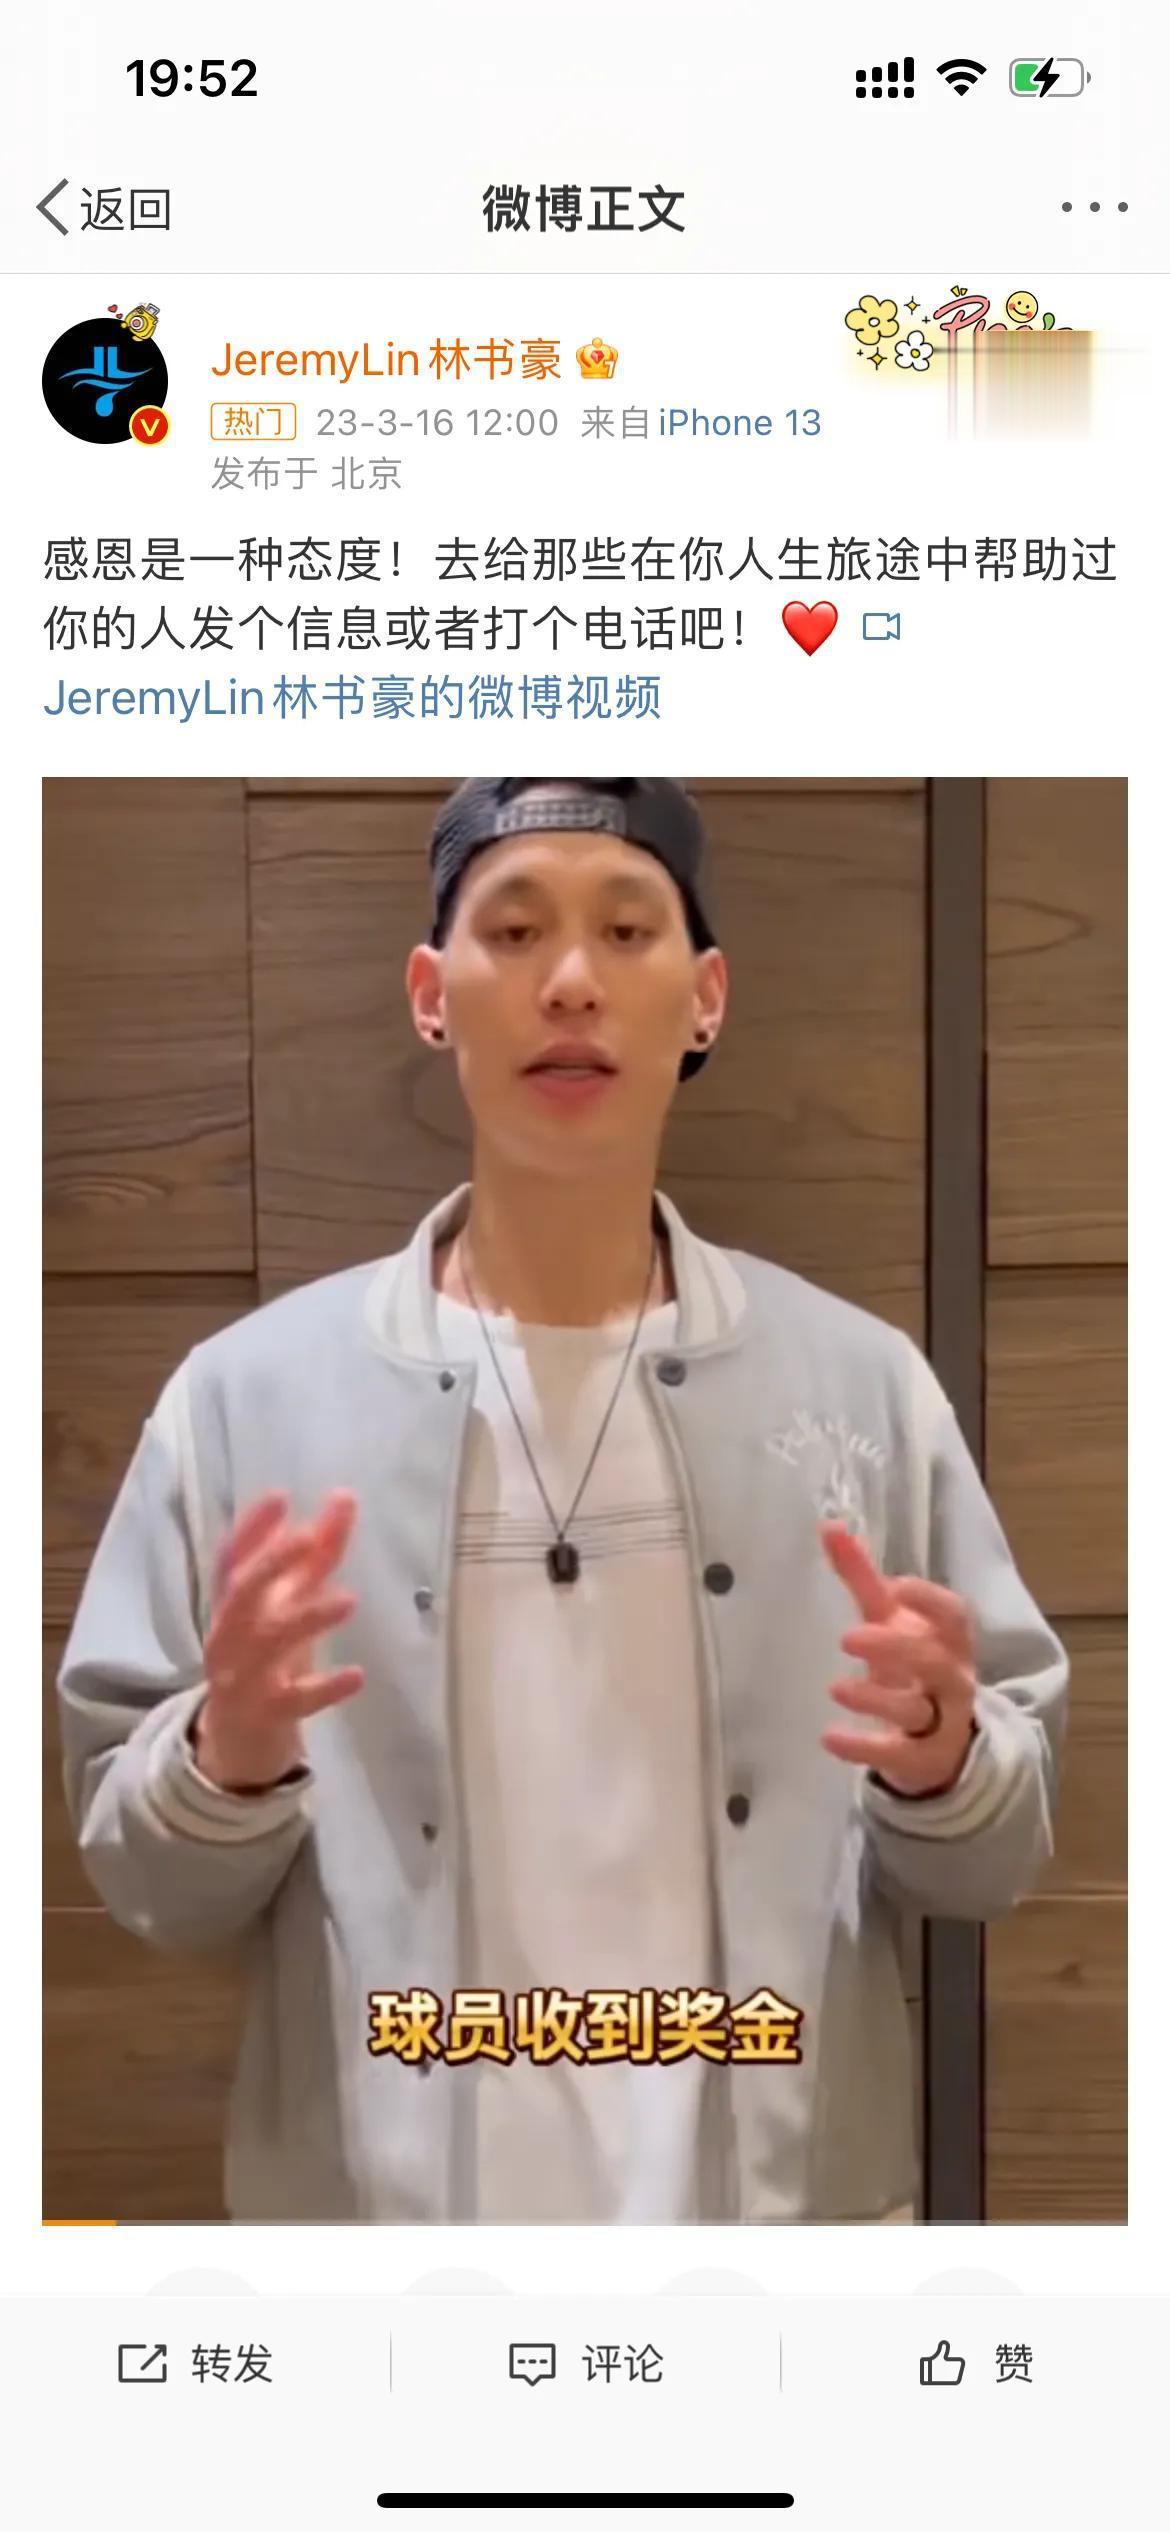 争议！NBA球星林书豪录视频用简体中文，中国台湾网友崩溃：能别用残体字吗？

究